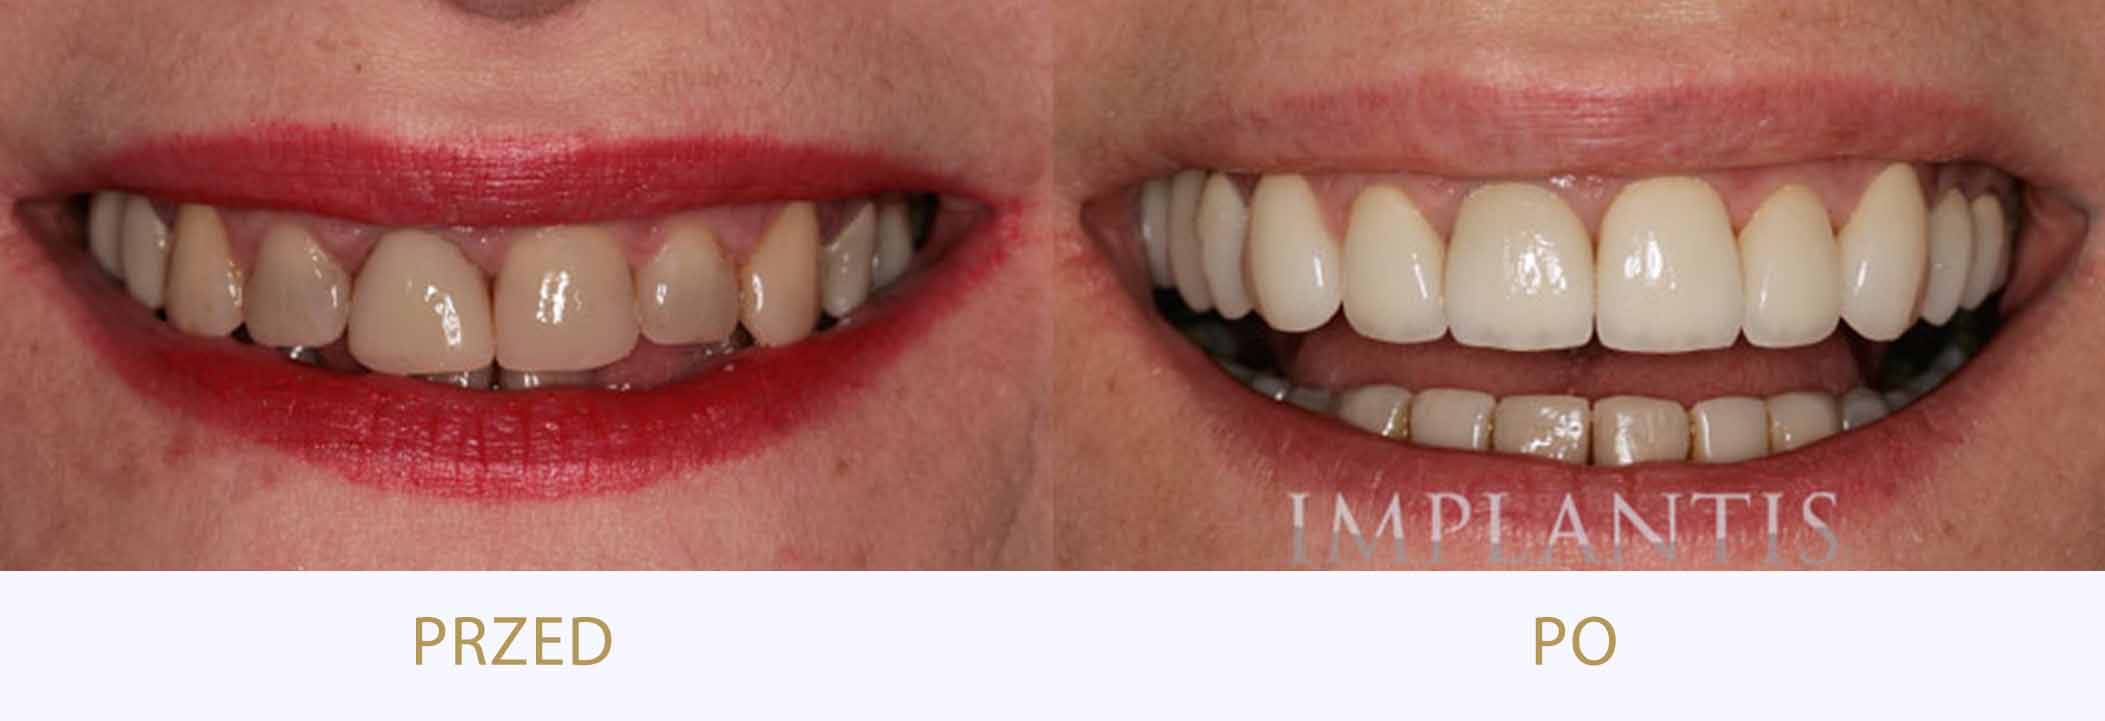 zęby przed i po leczeniu, poprawa estetyki uśmiechu